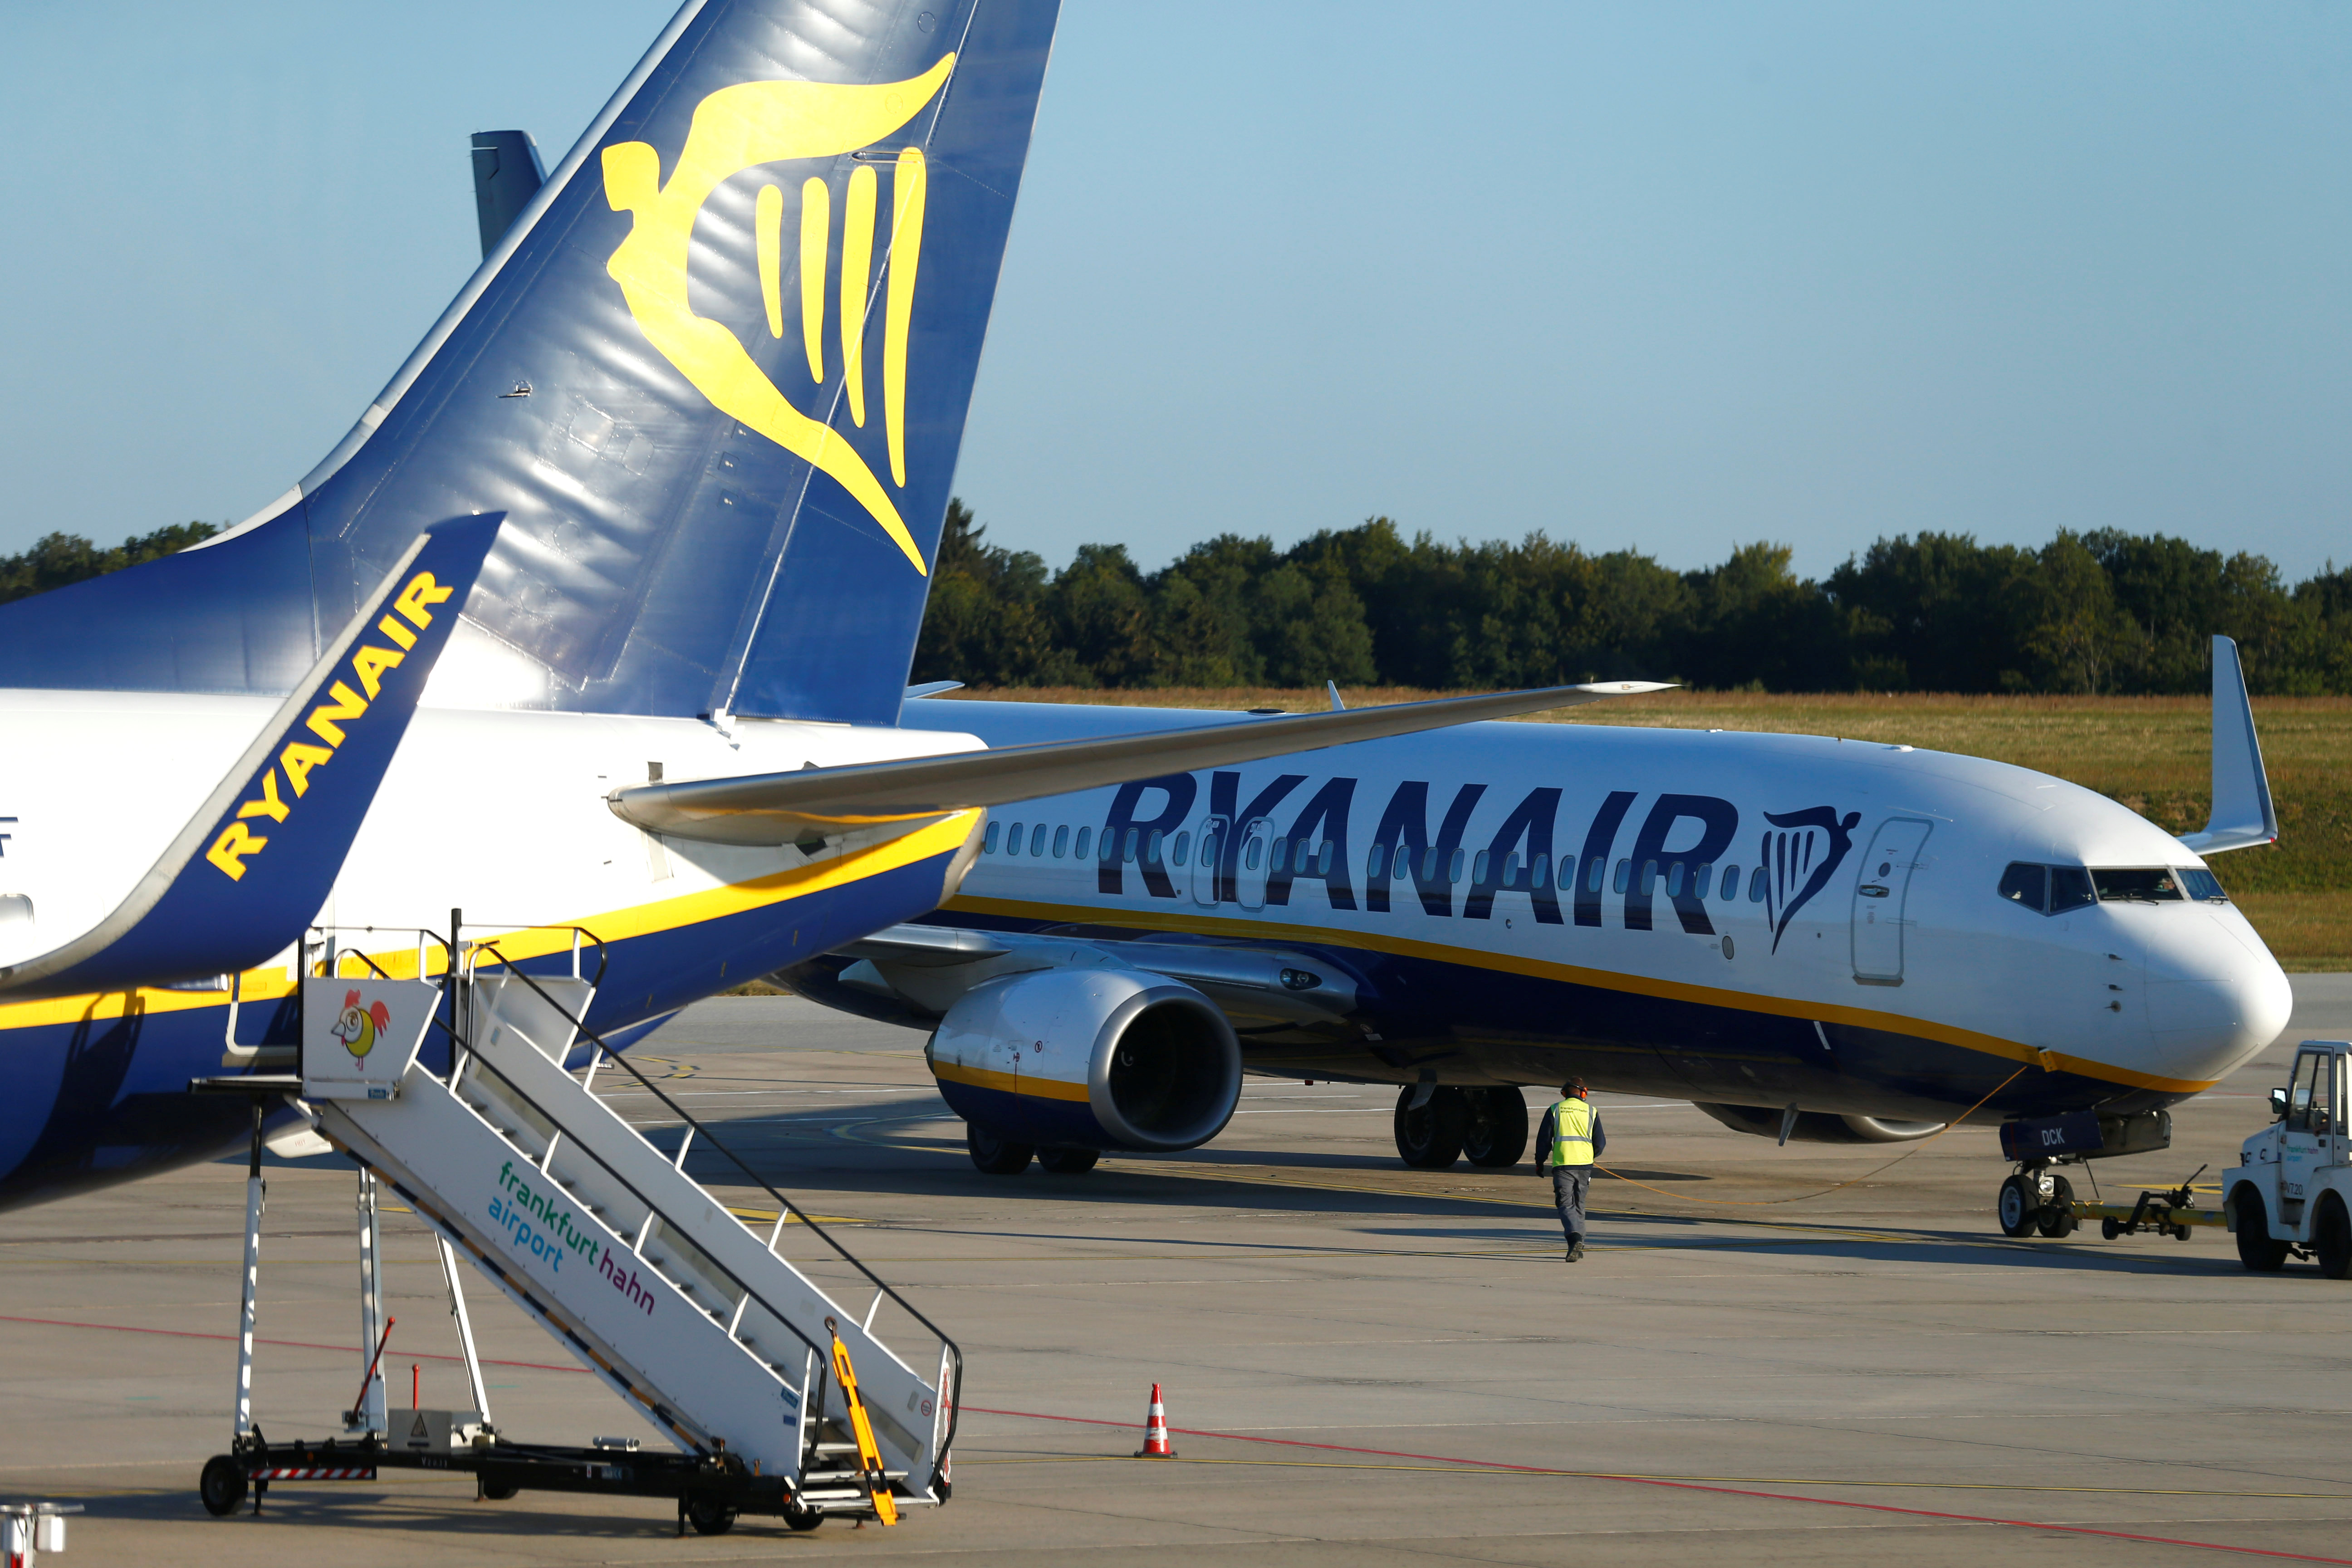 Rebond du Covid : Ryanair baisse ses capacités 20%, Easyjet ferme trois bases aéroportuaires